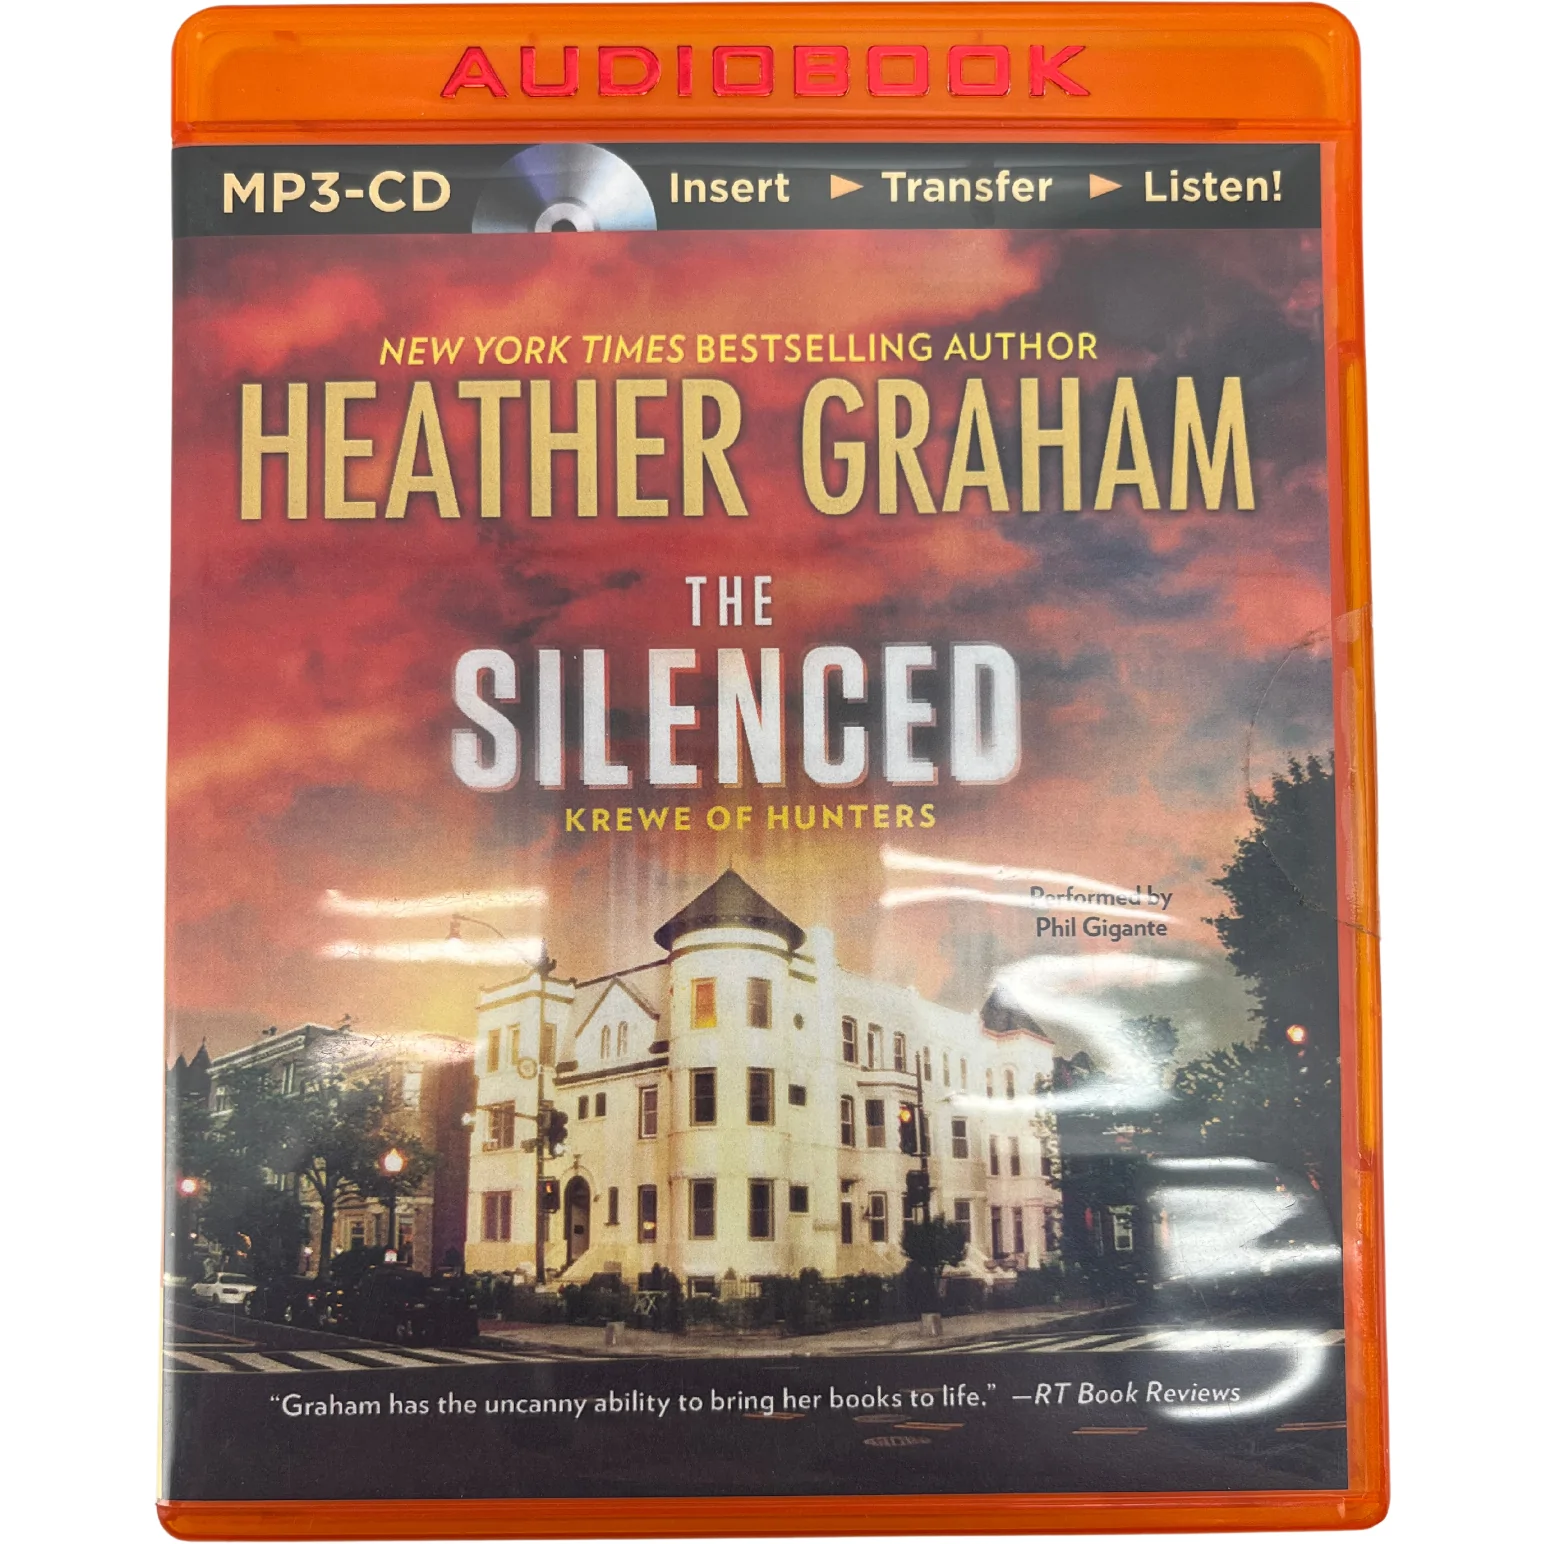 Audio Book "The Silenced" / Author Heather Graham / MP3